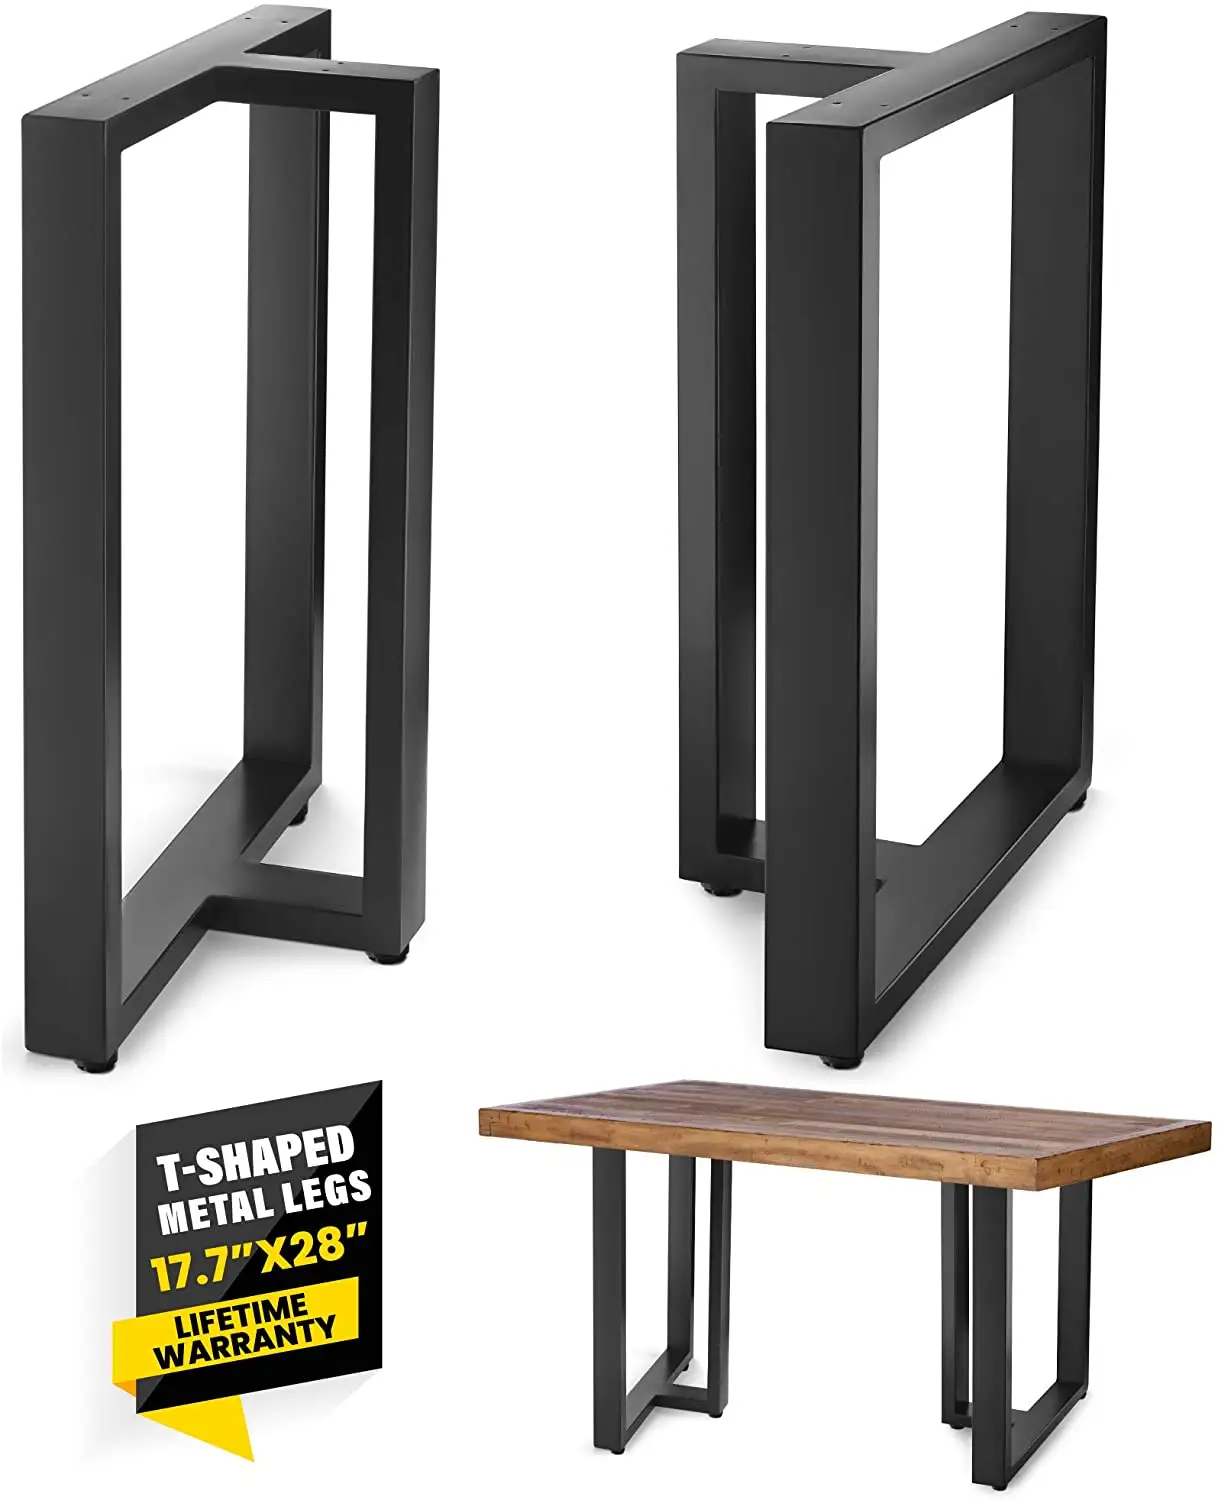 金属製テーブル脚28インチ高さ17.7 "幅、ダイニング家具用の素朴な頑丈な脚-黒色粉体塗装